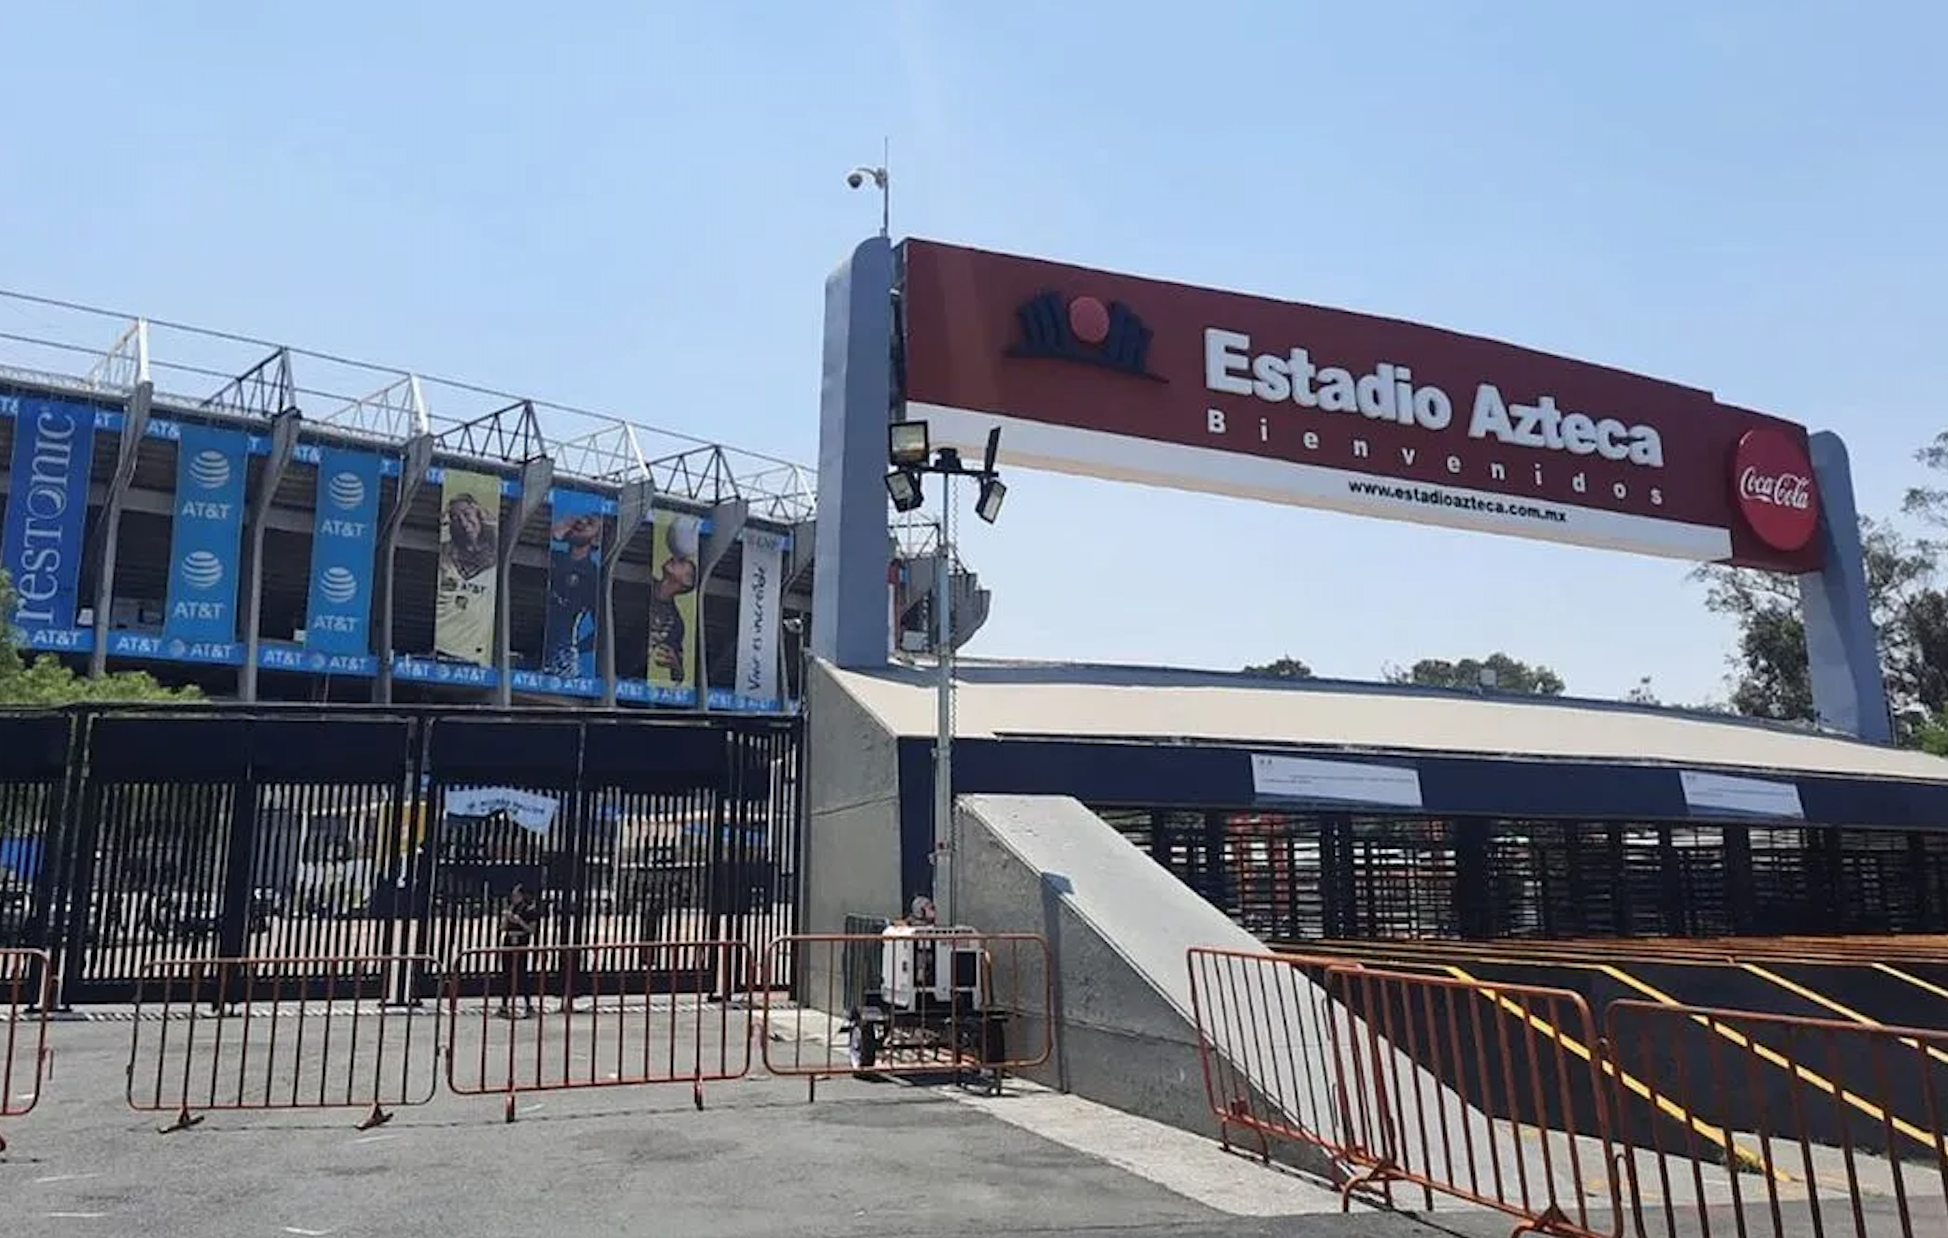           FIFA công bố thành phố tổ chức World Cup 2026: Sân Azteca đi vào lịch sử         